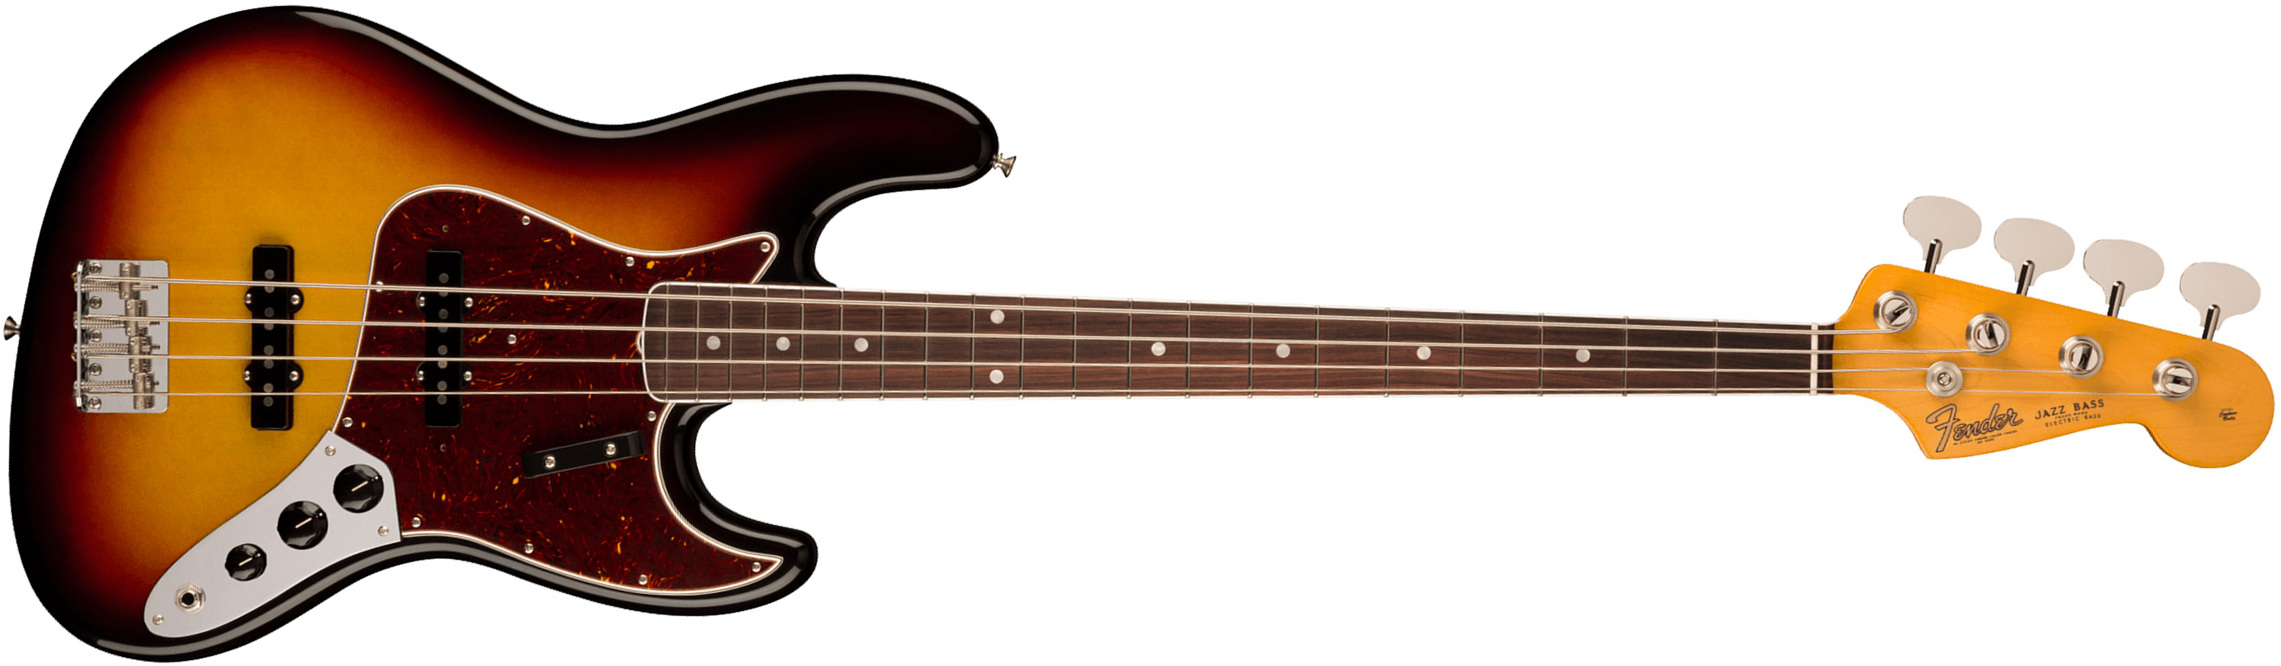 Fender Jazz Bass 1966 American Vintage Ii Usa Rw - 3-color Sunburst - Bajo eléctrico de cuerpo sólido - Main picture